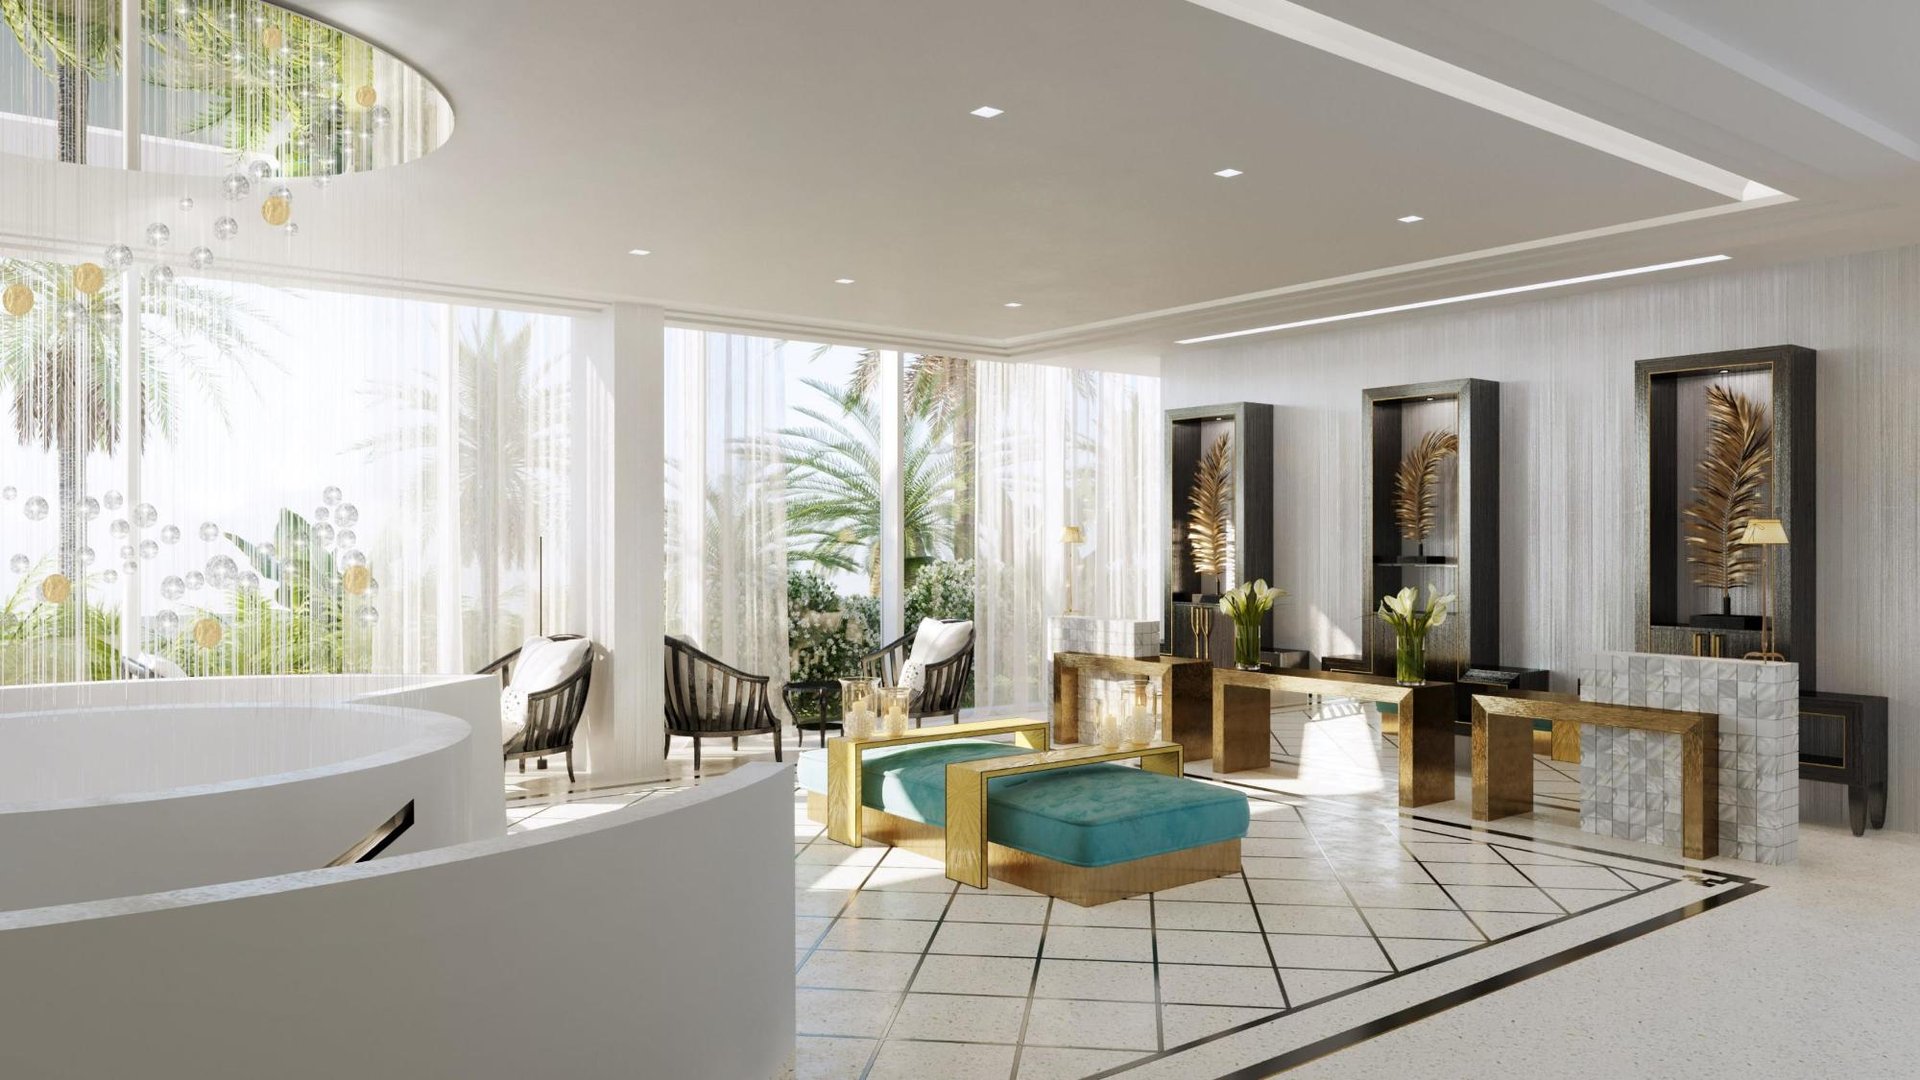 Maison Albar Hotels Le Victoria | Hôtel 5 étoiles Nice